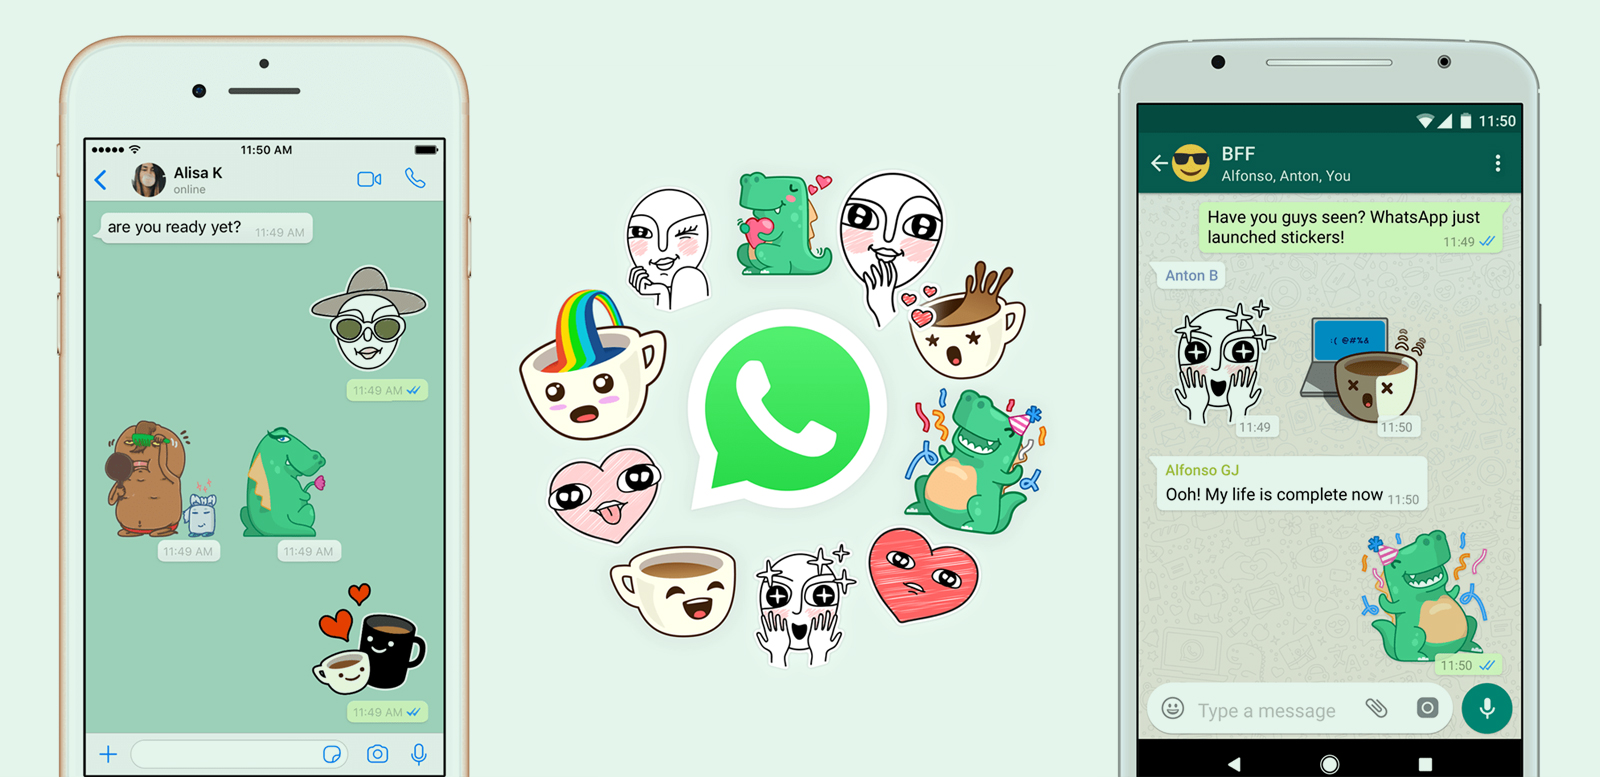 Whatsapp stickers 